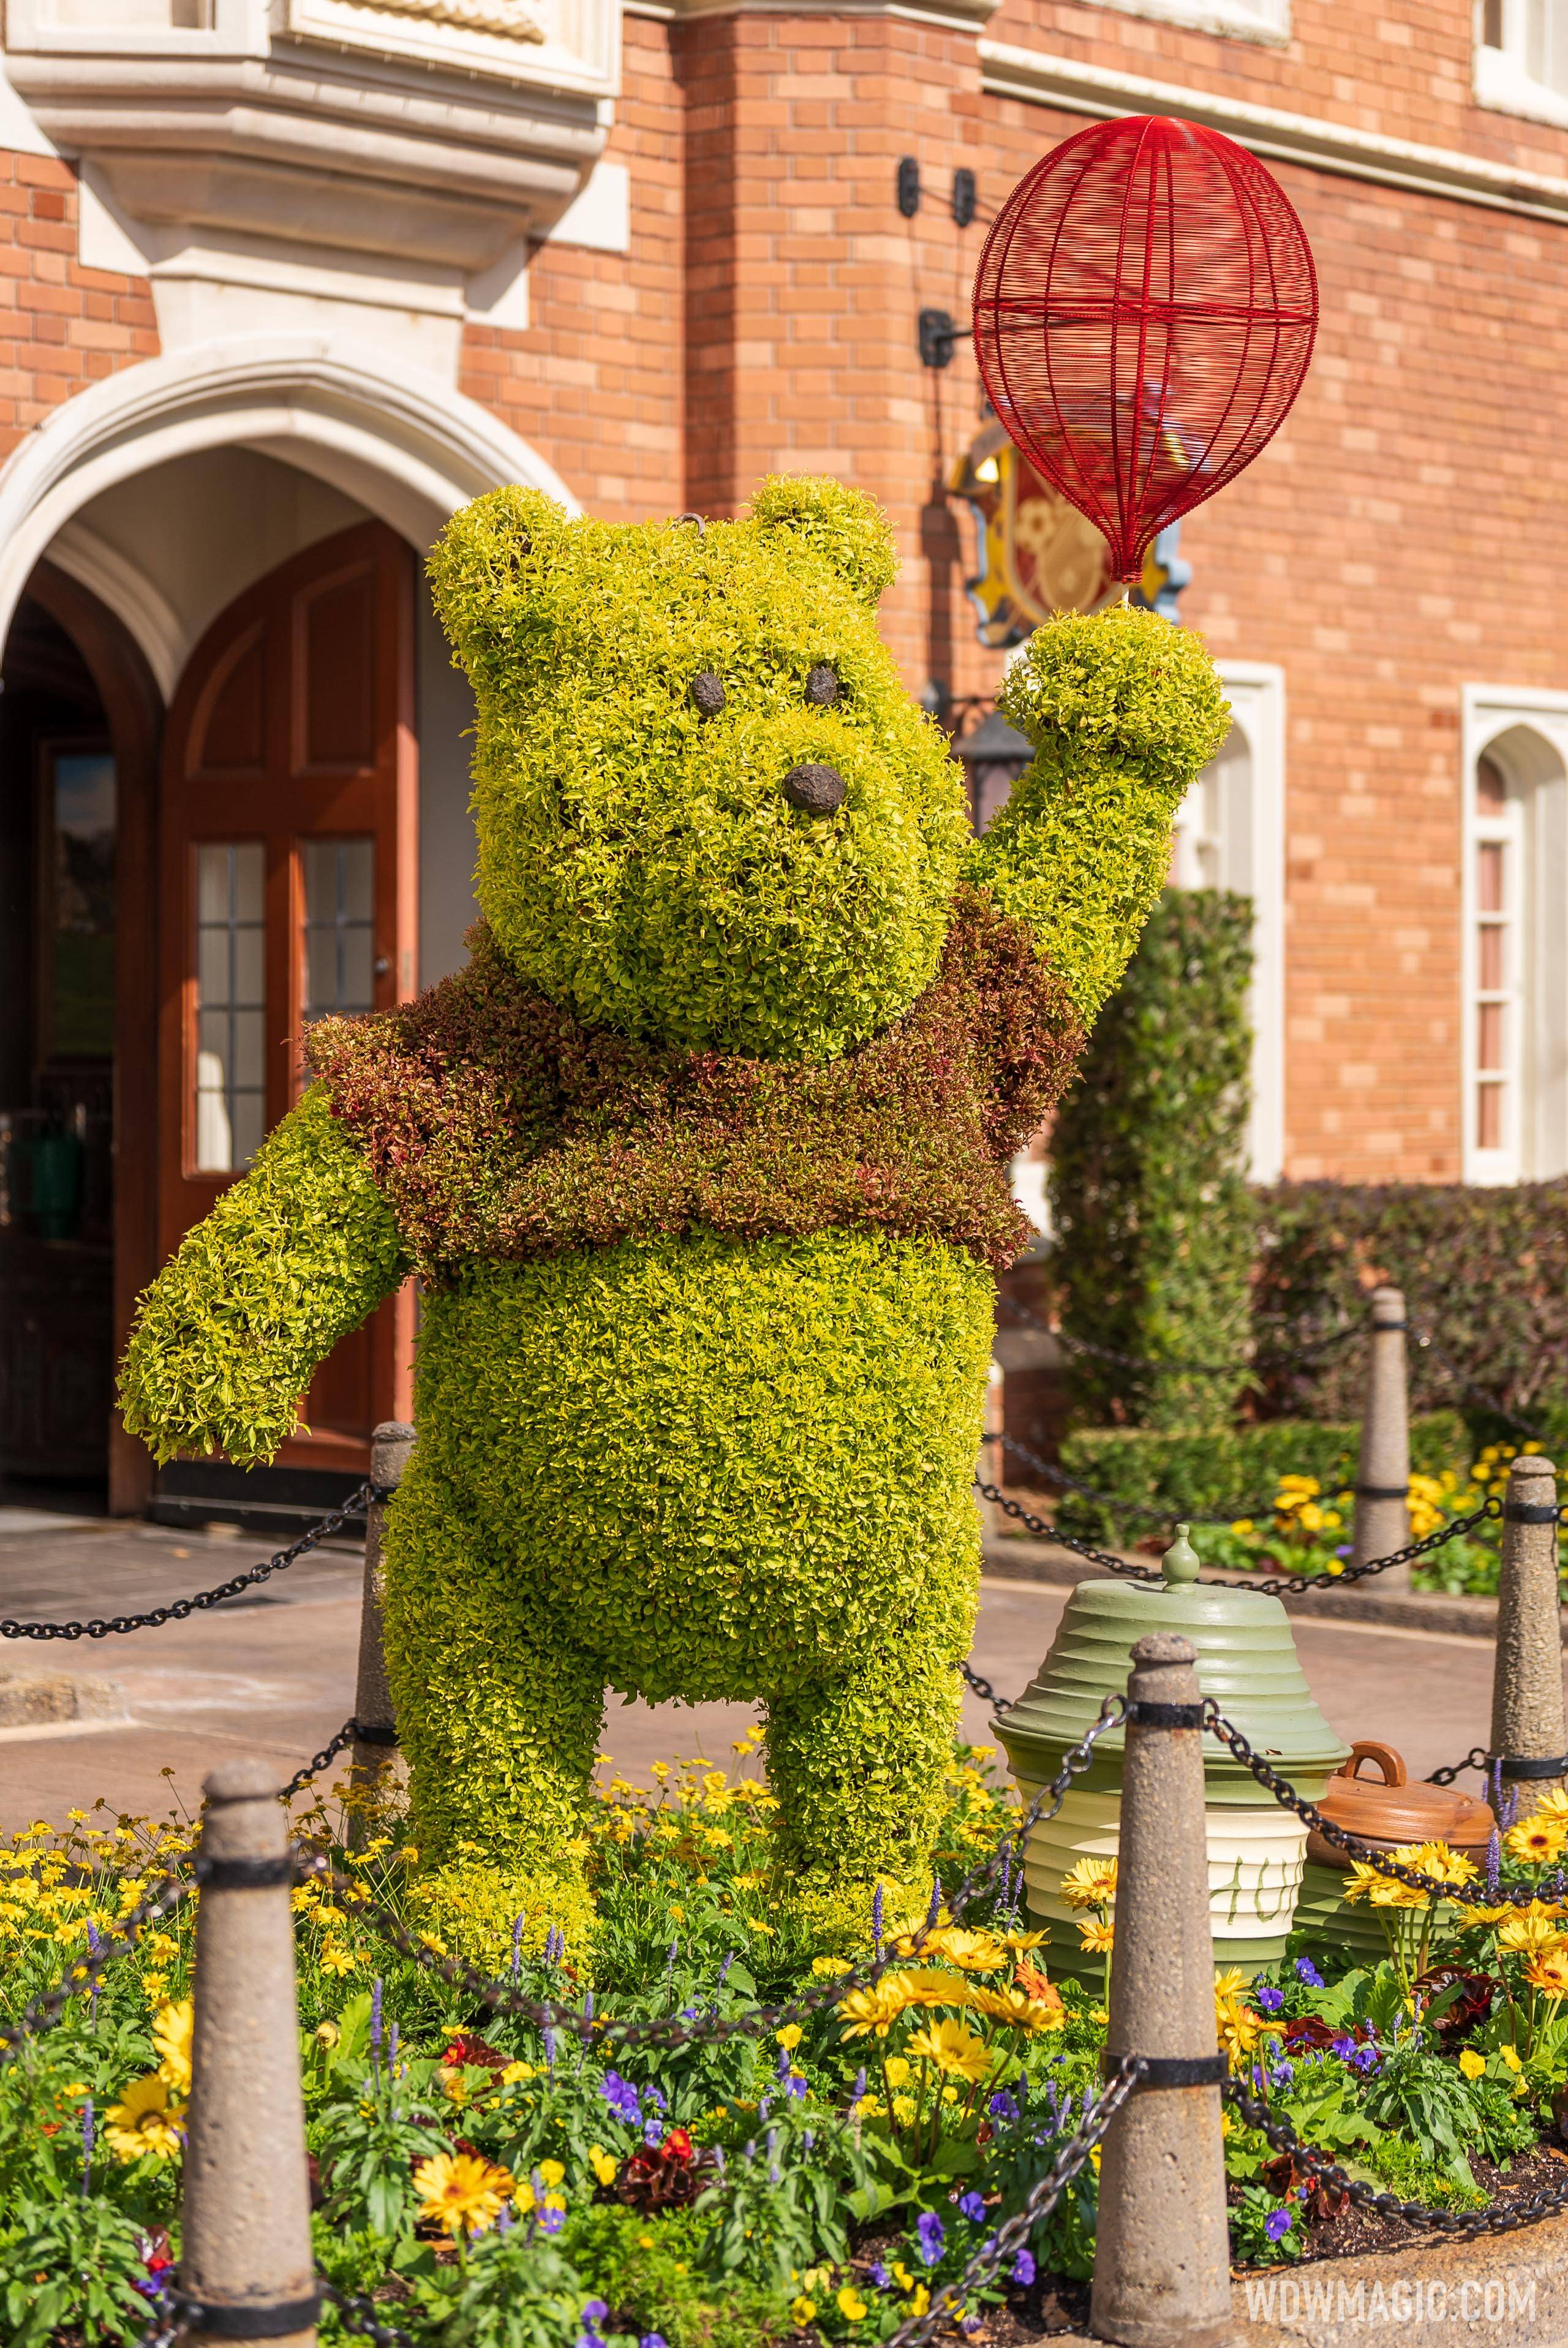 Winnie the Pooh – United Kingdom Pavilion